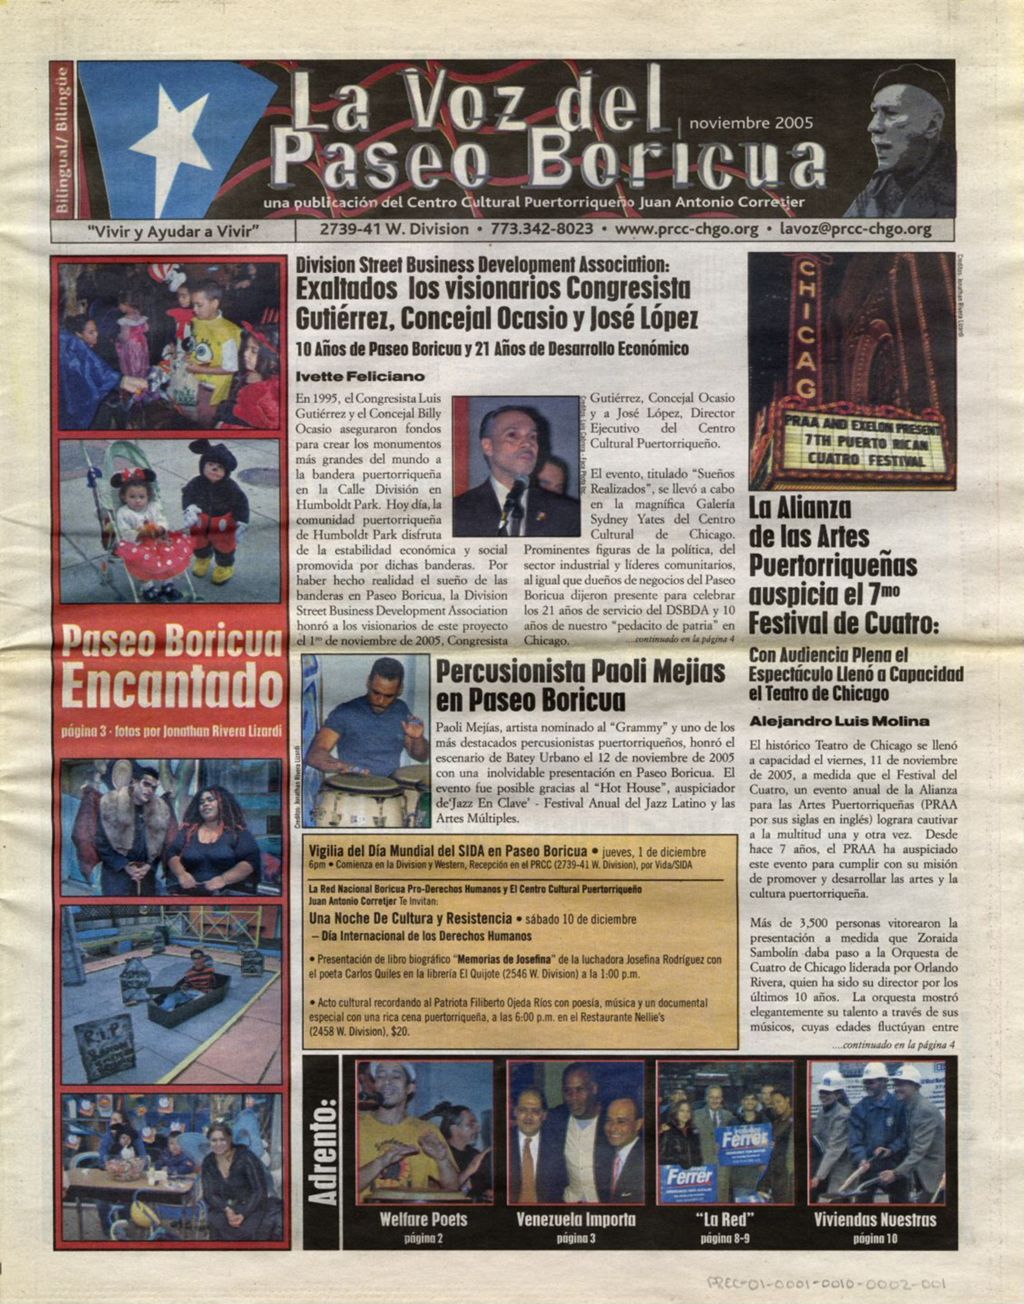 Miniature of La Voz del Paseo Boricua; November 2005 (Spanish and English covers)